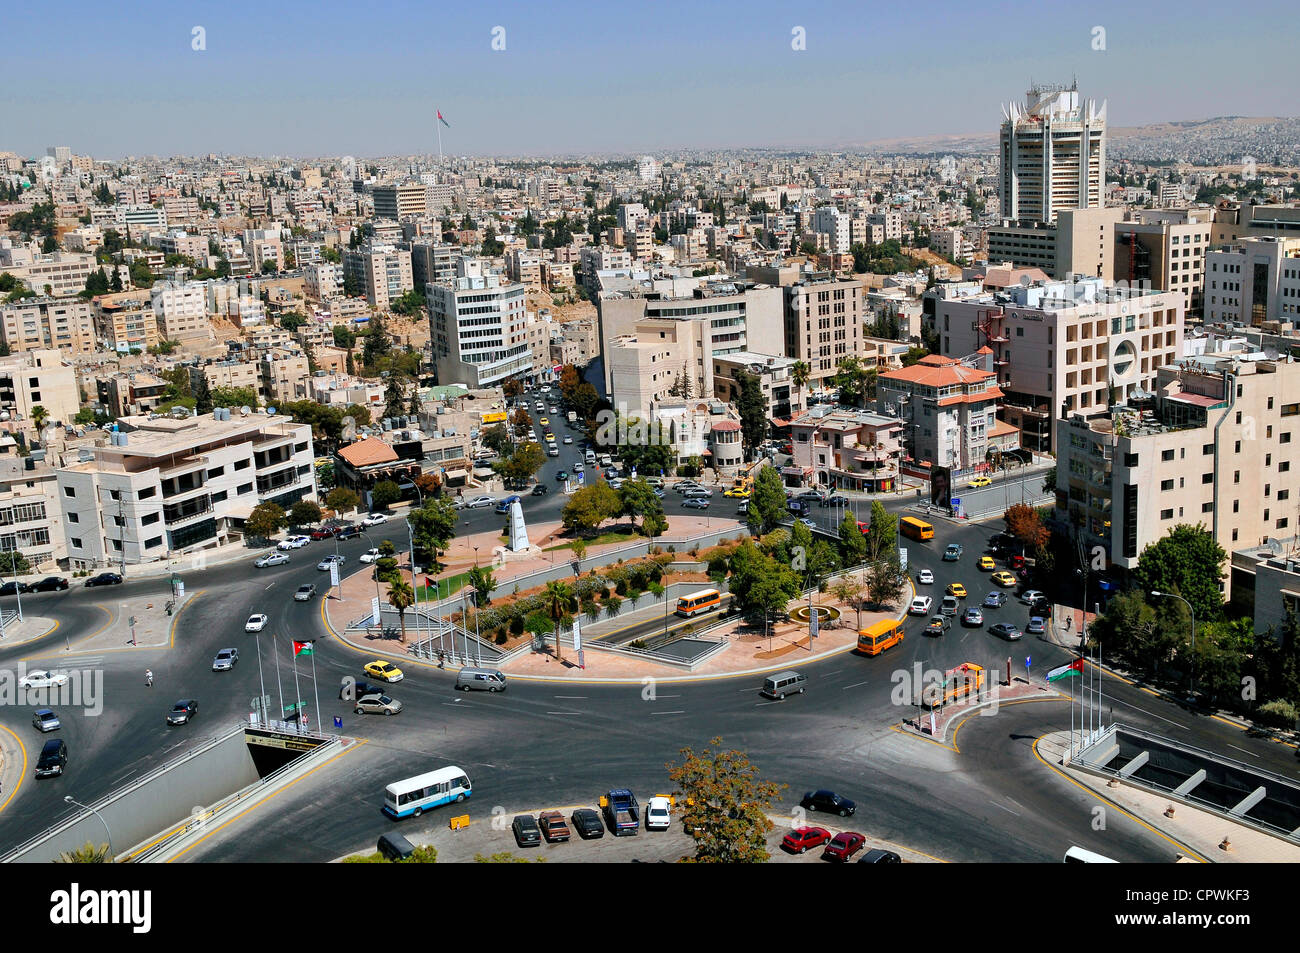 Jordan amman city hi-res stock photography and images - Alamy